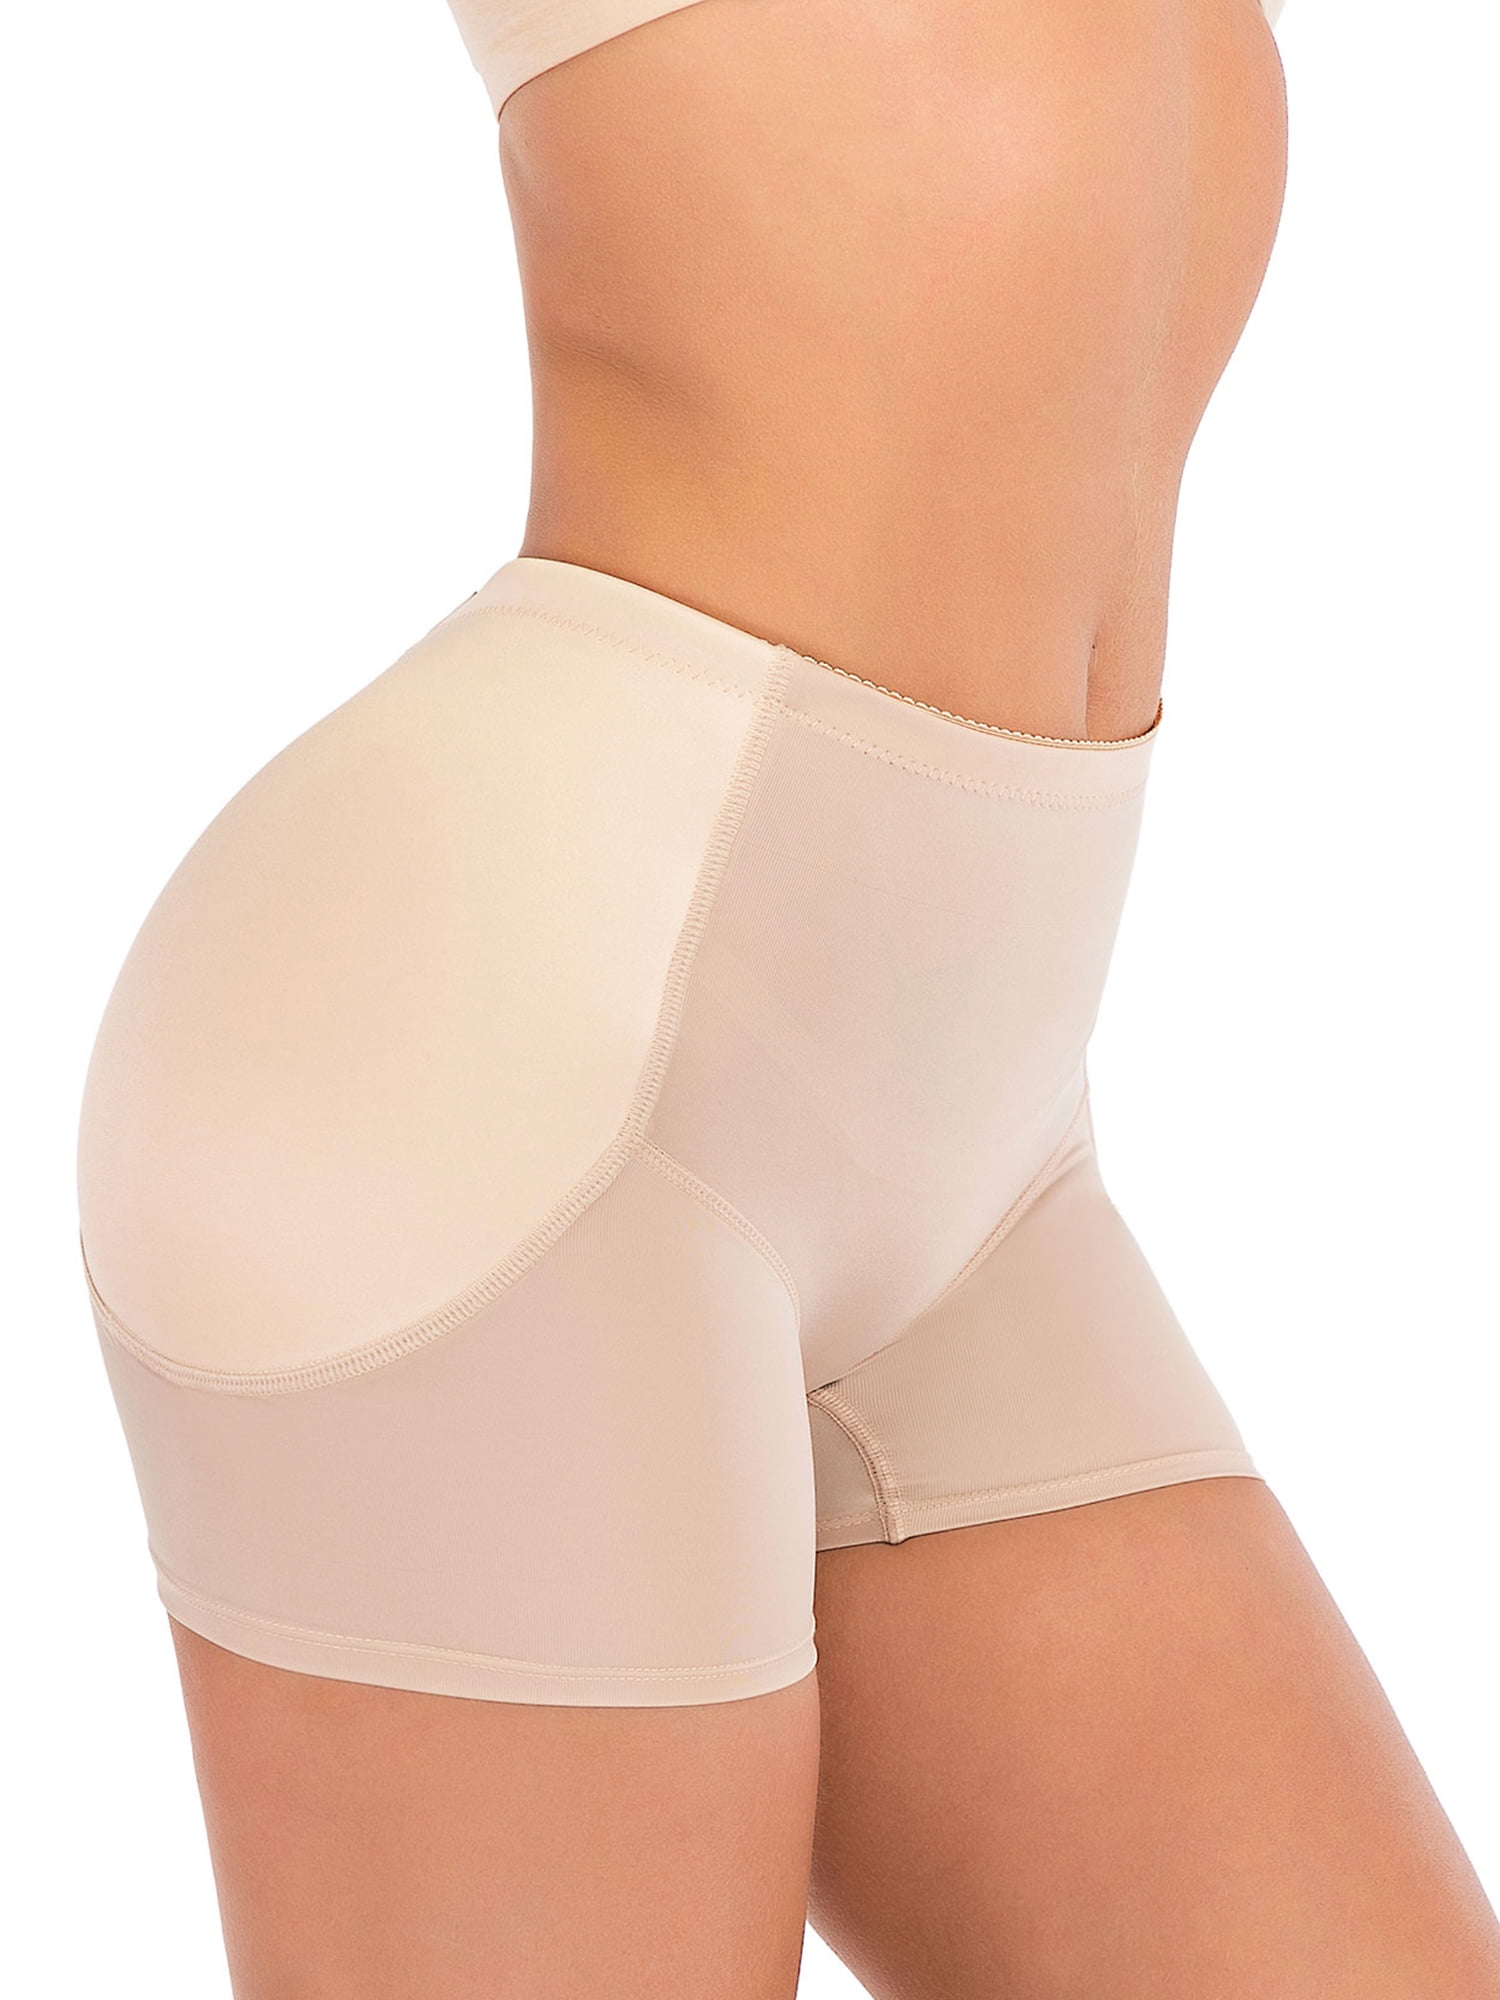 Women Butt Lift Shorts Hip Enhancer Panties Tummy Control